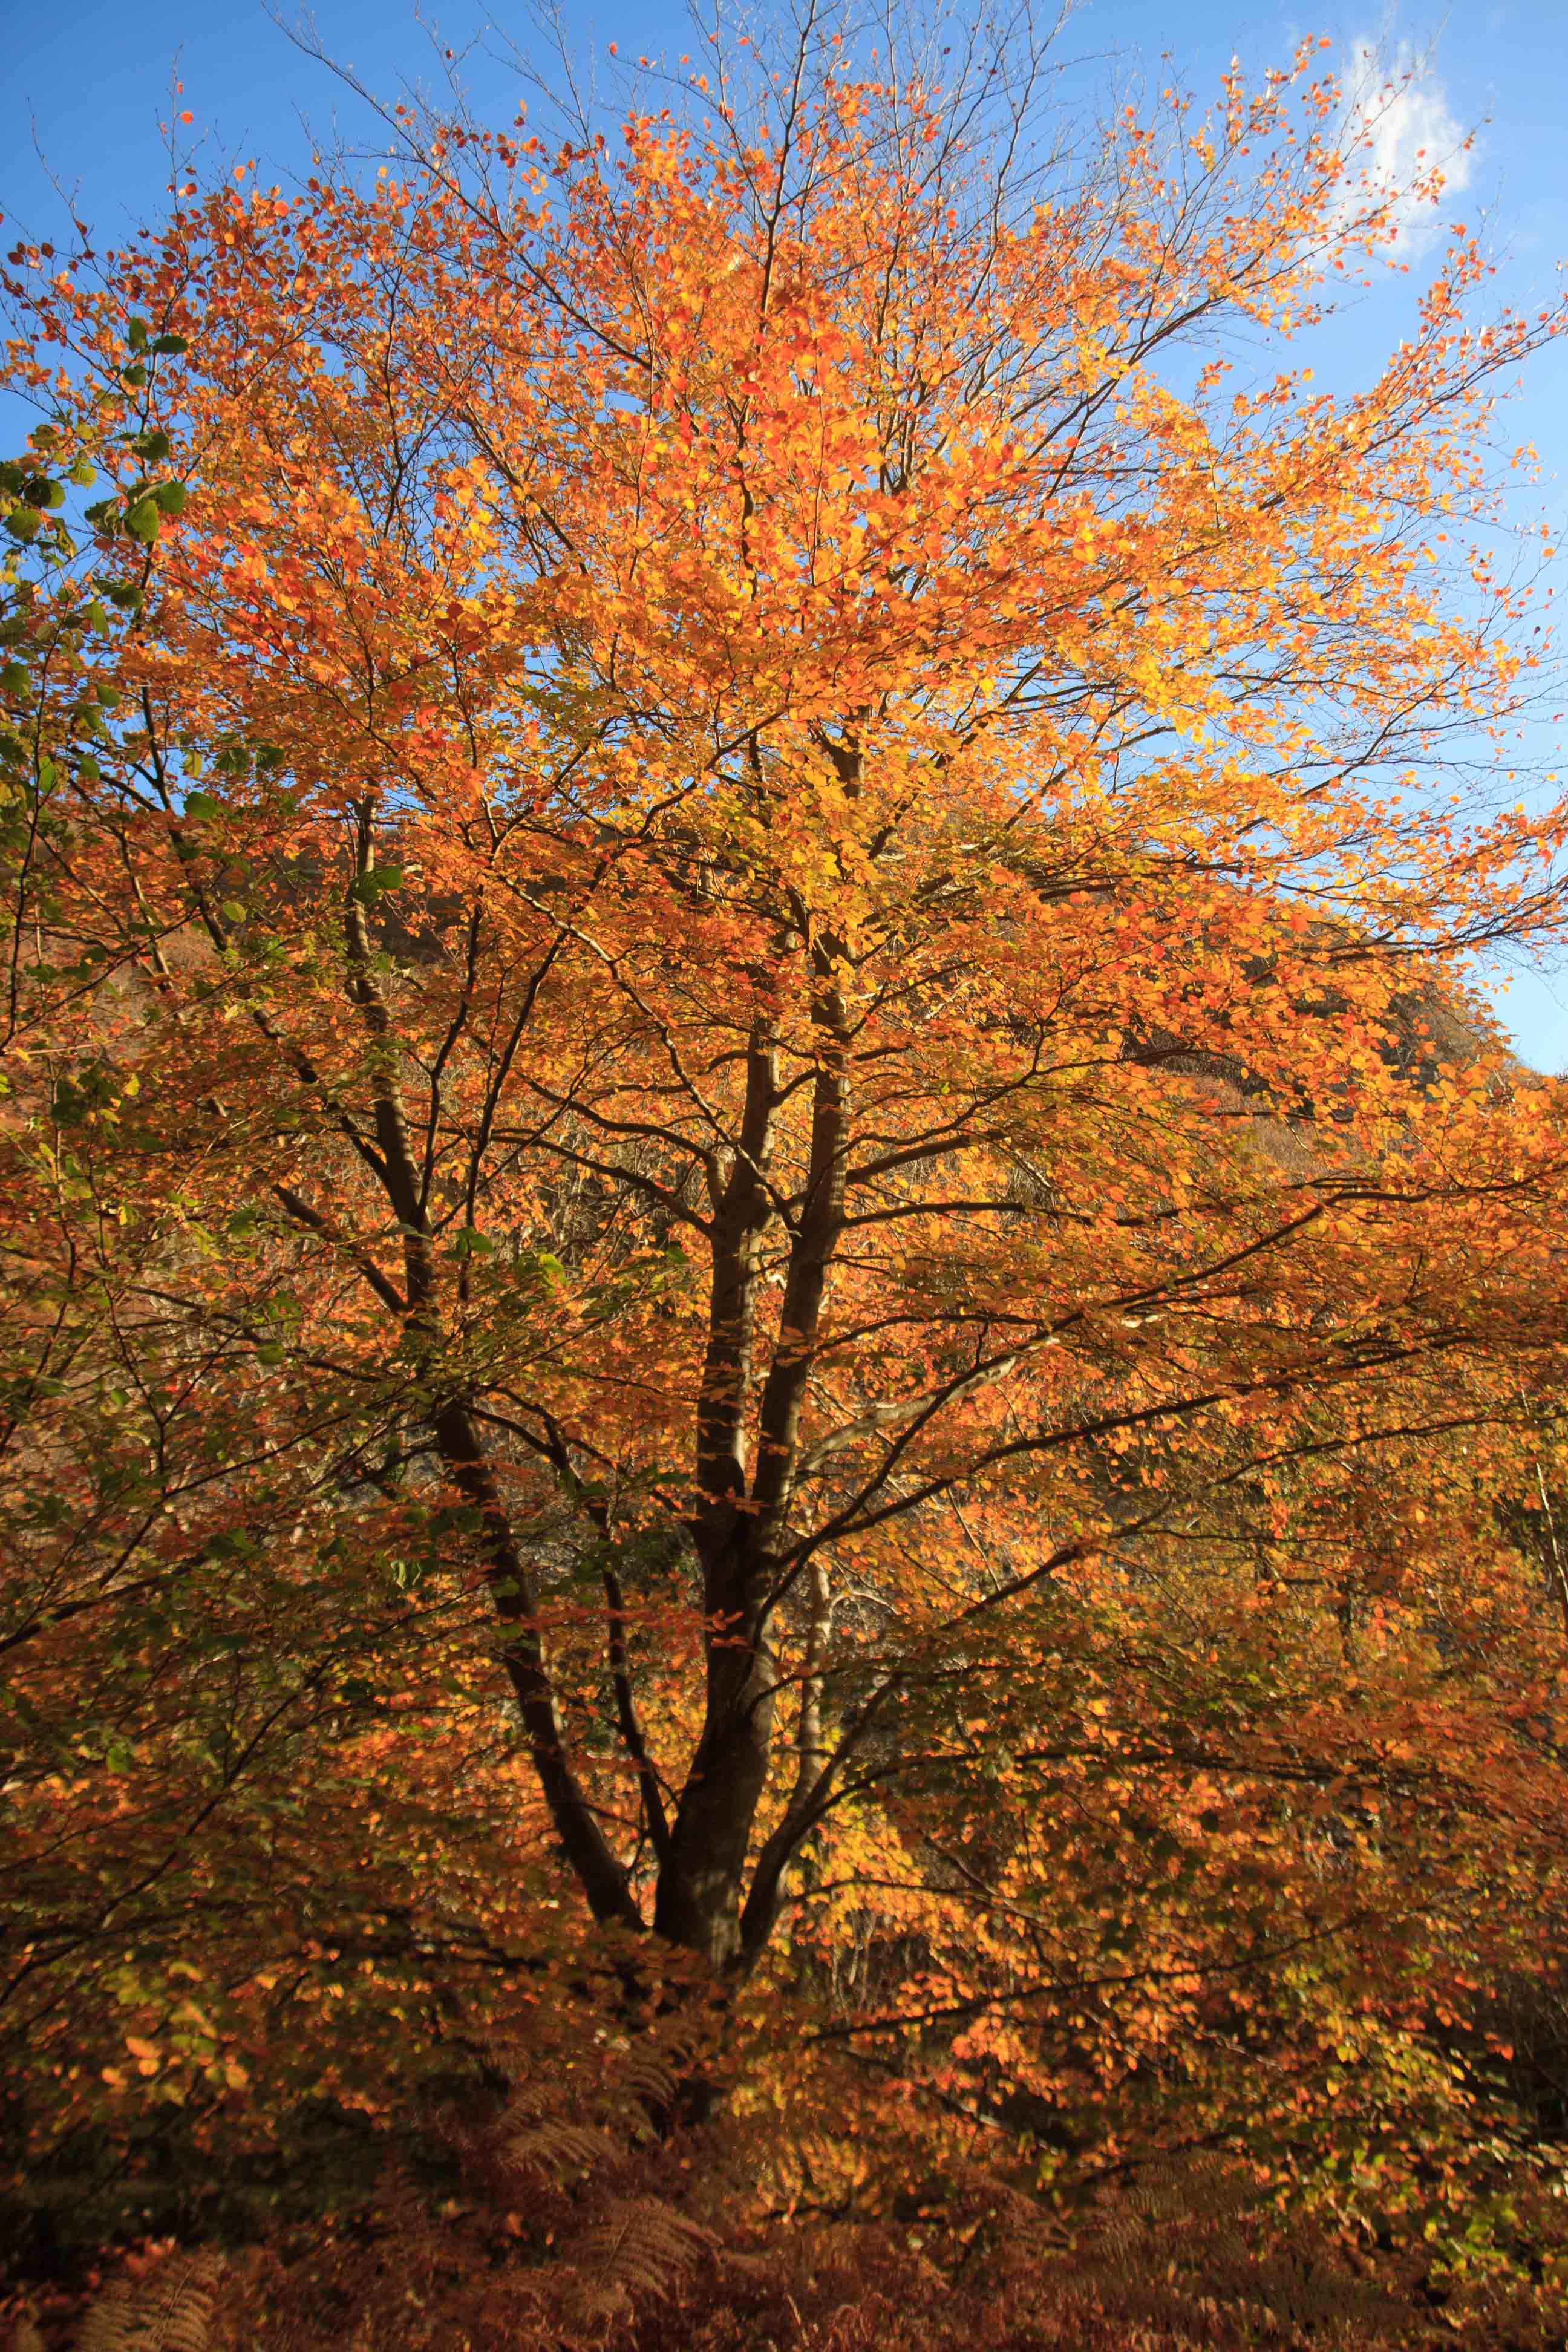 Tree on the East Lynn River in full autumn splendour. November 2013.